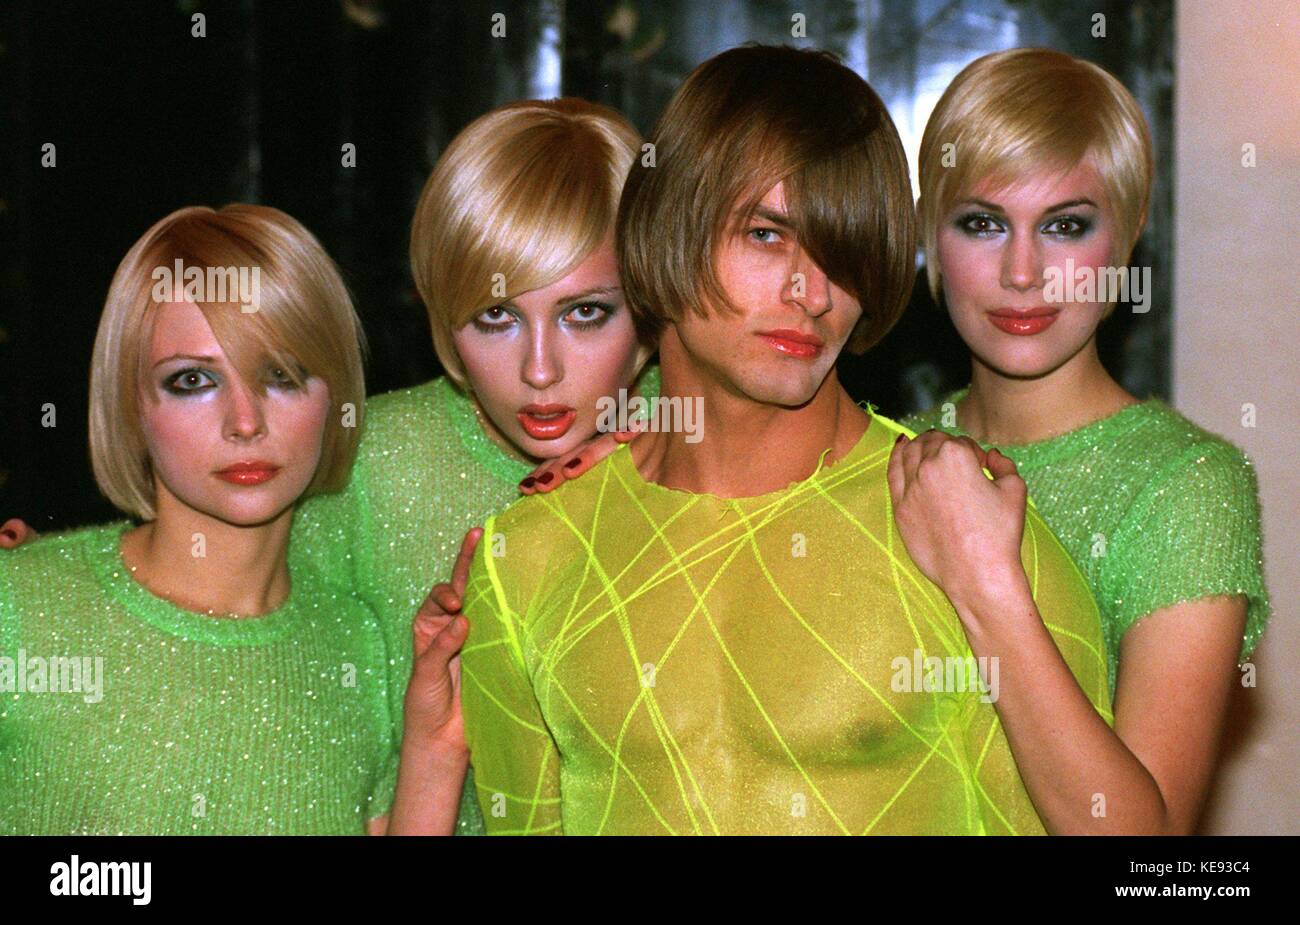 Vier Modelle präsentieren blonde kurze Haarschnitte am 31. Januar 1996 in Hamburg (Deutschland). | Verwendung weltweit Stockfoto